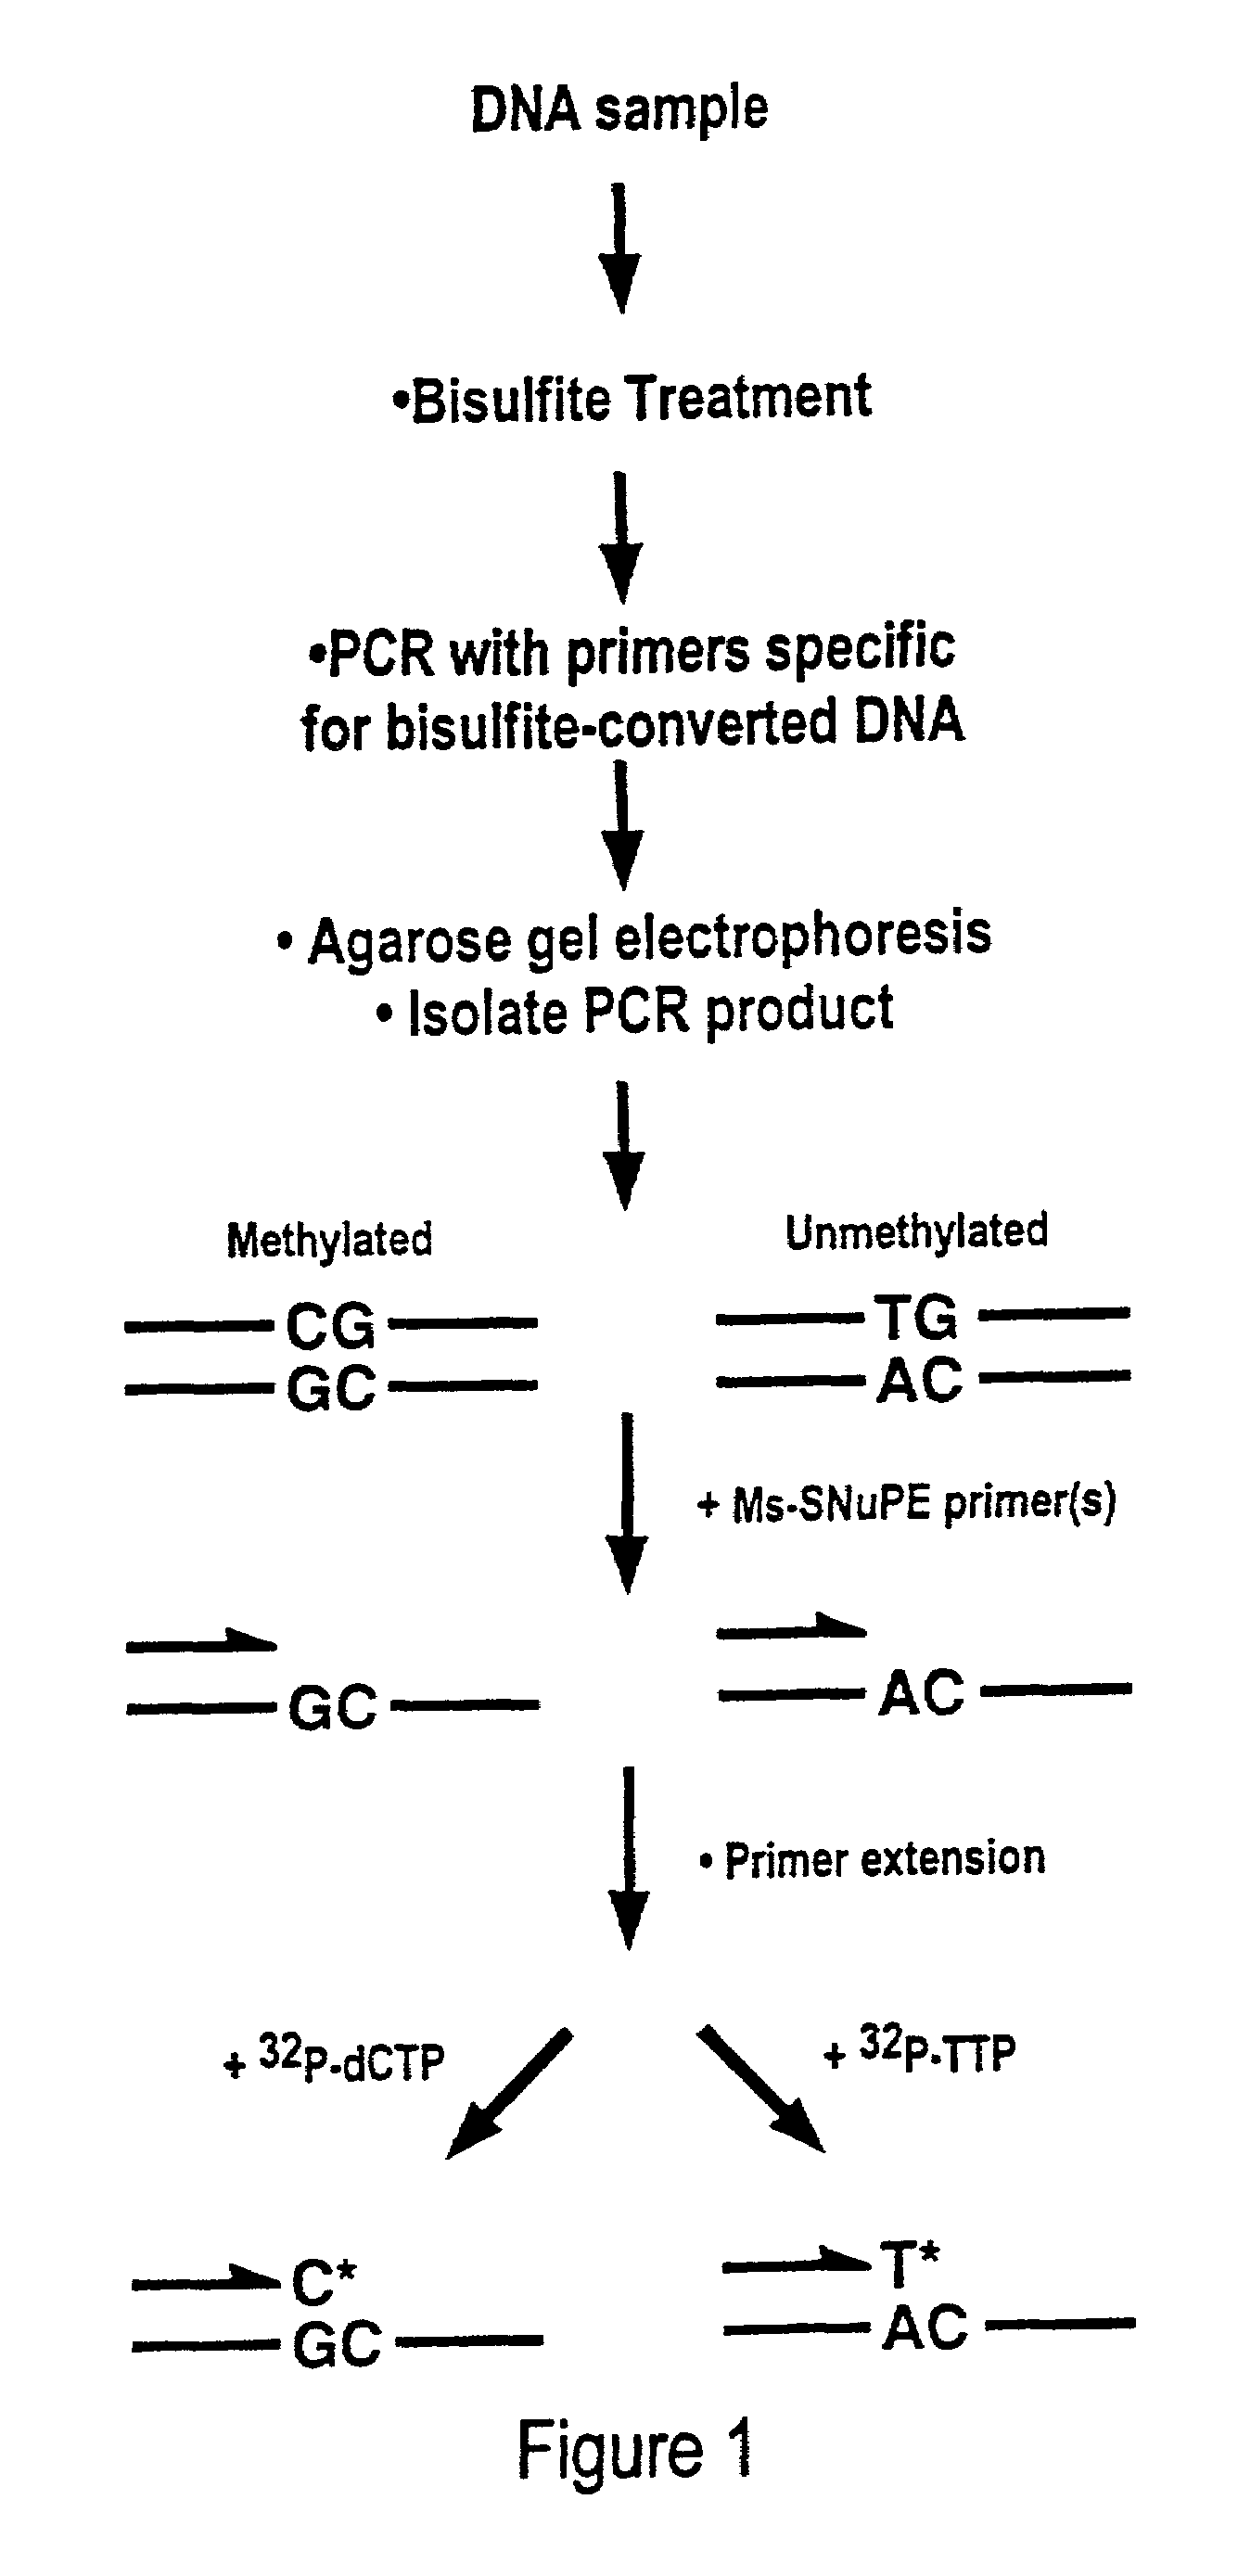 Cancer diagnostic method based upon DNA methylation differences